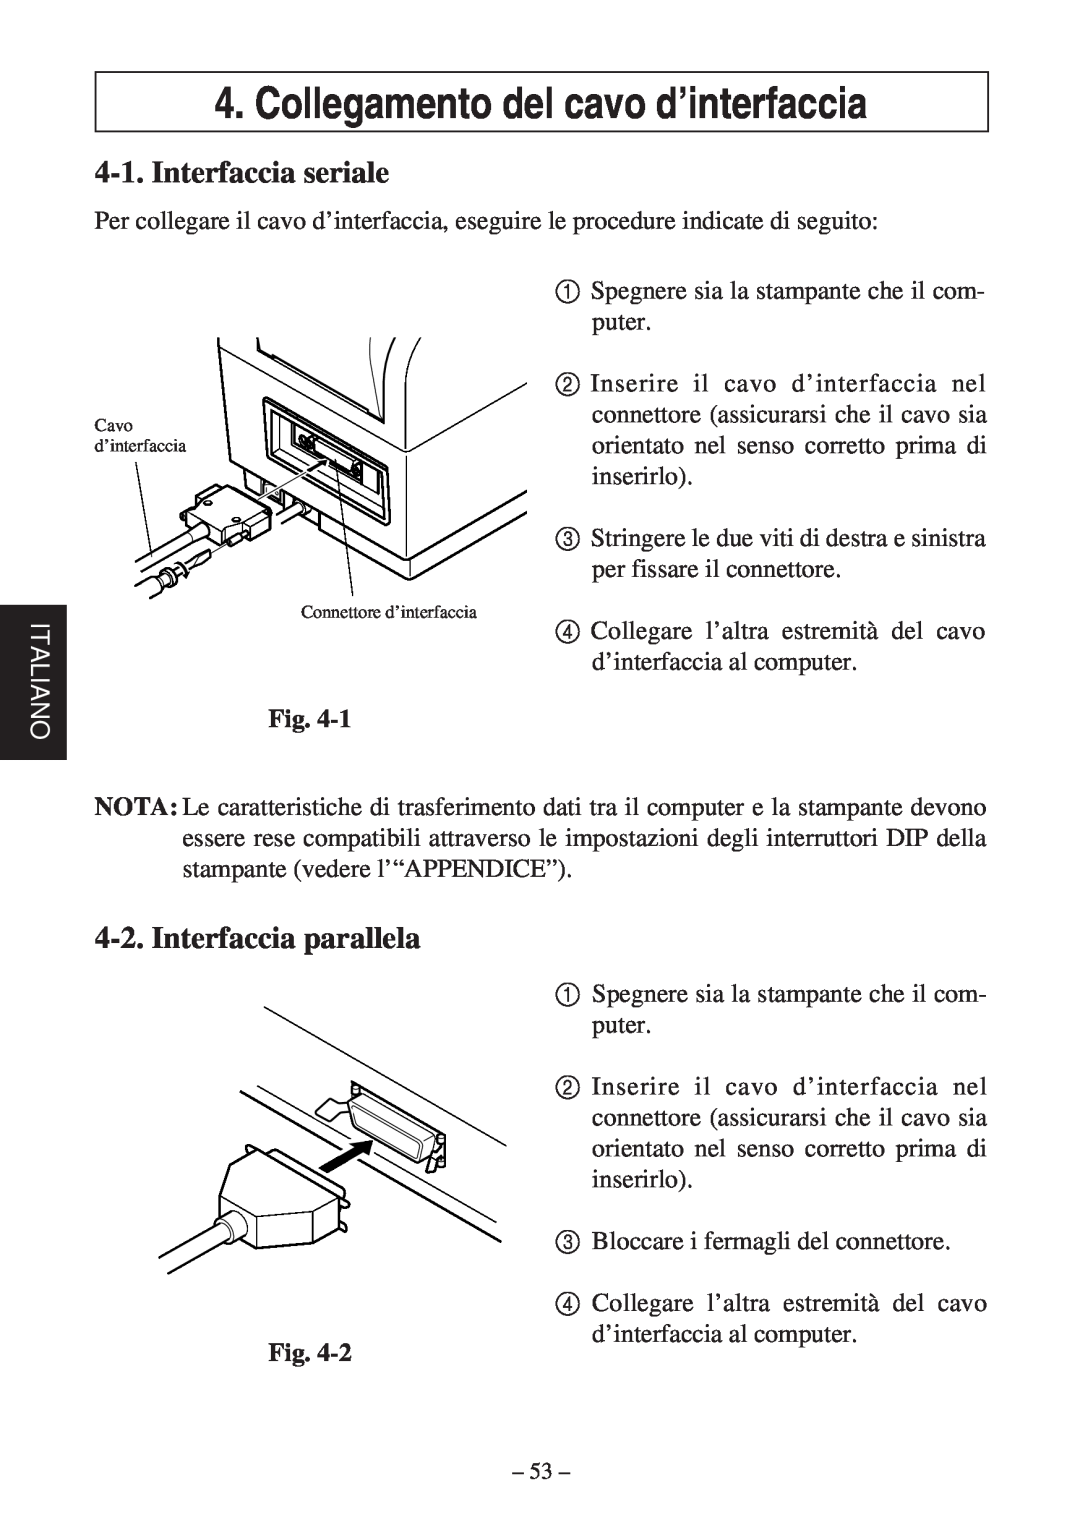 Star Micronics TSP400Z Series Collegamento del cavo d’interfaccia, Interfaccia seriale, Interfaccia parallela, Italiano 